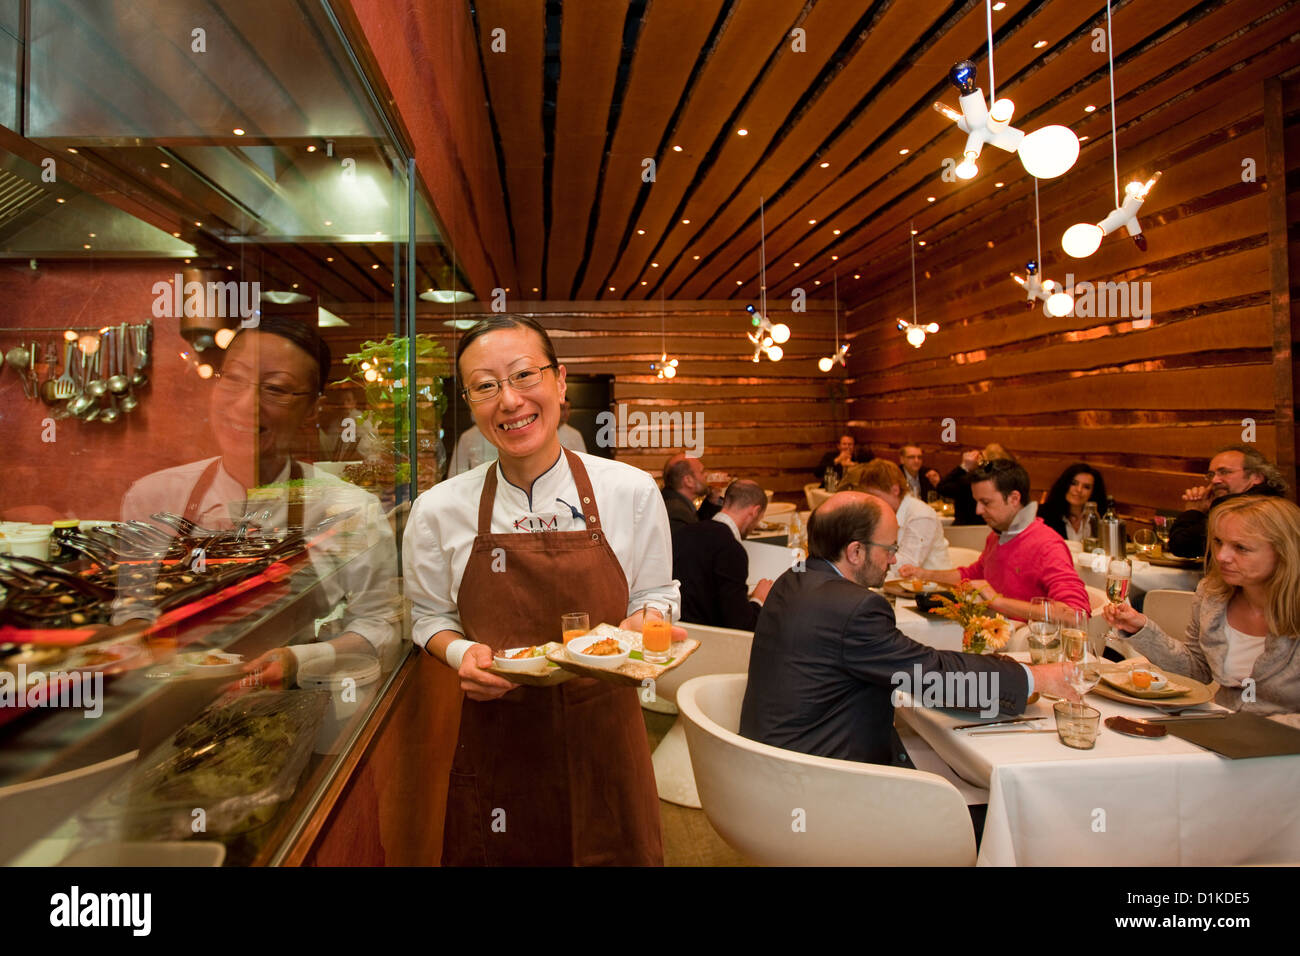 Österrreich, Wien 9, Lustkandlgasse 4, "Kim kocht" asiatisch kreative Küche auf höchstem Niveau. Kim serviert persönlich. Stock Photo